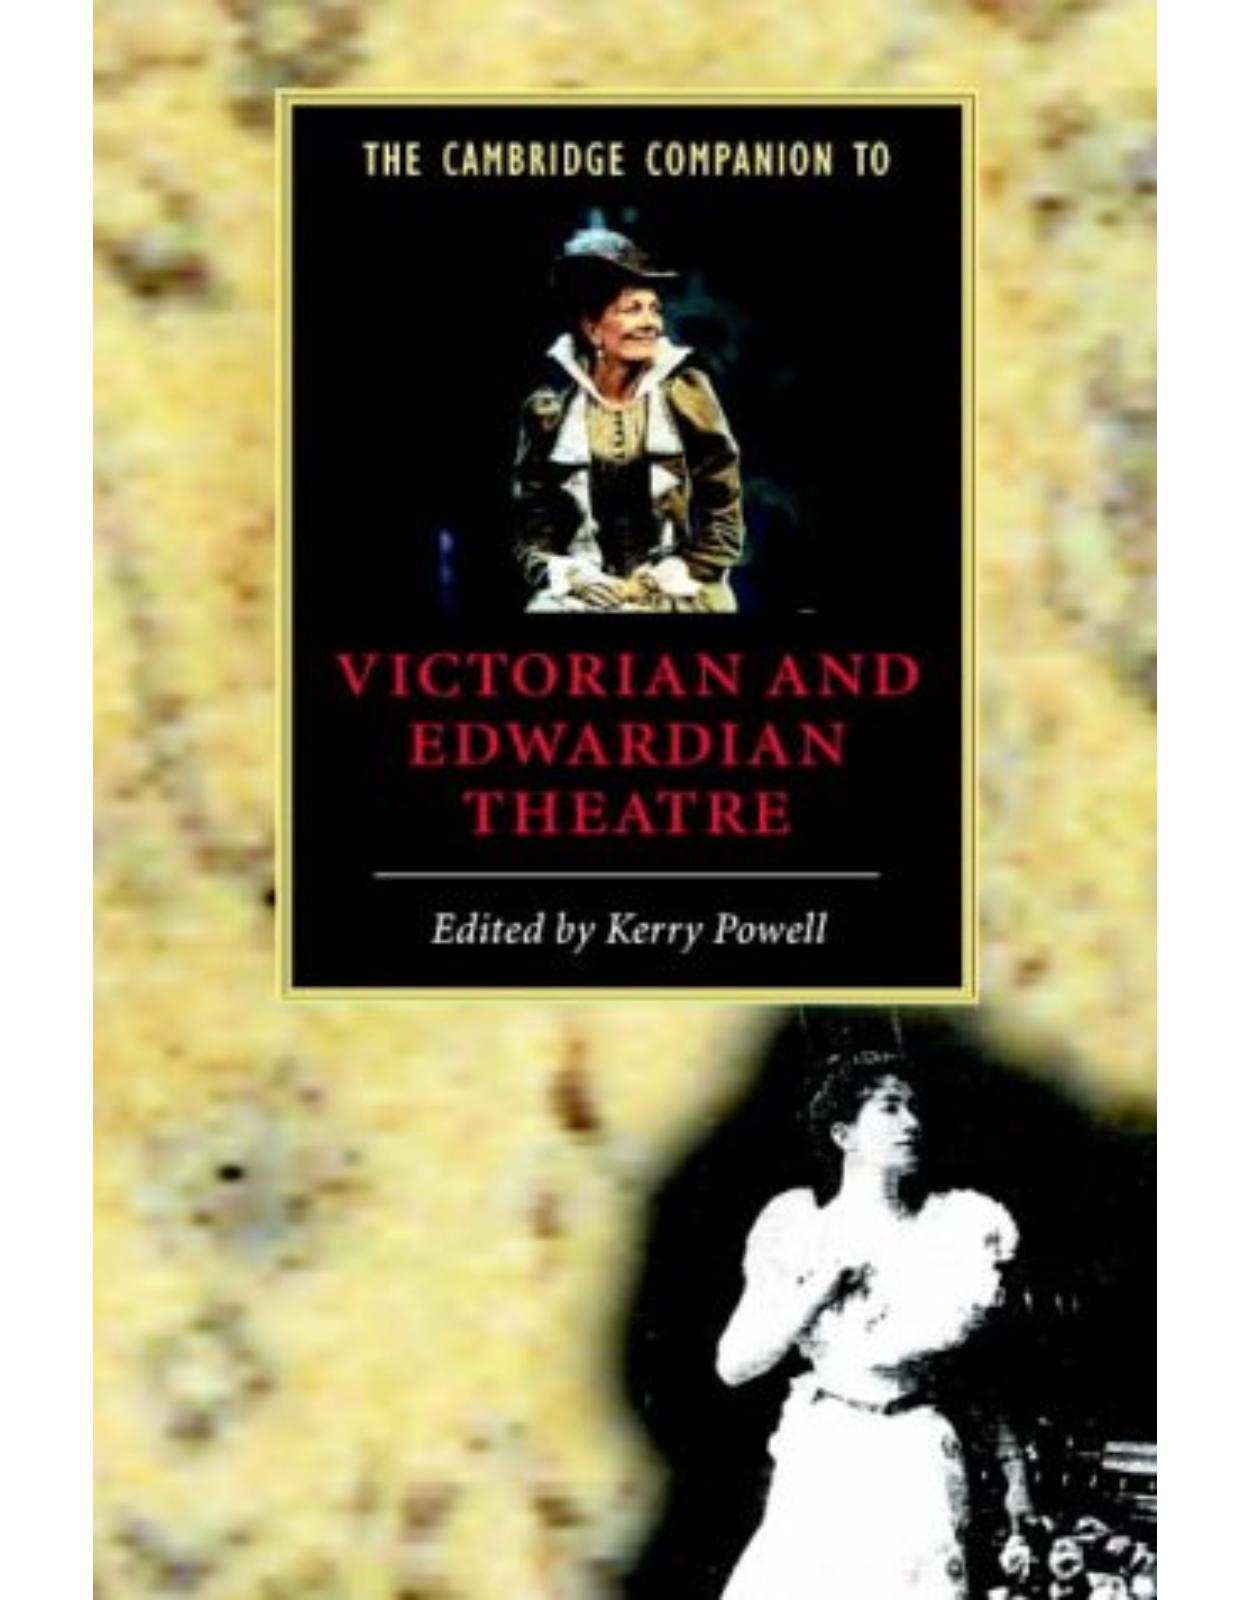 The Cambridge Companion to Victorian and Edwardian Theatre (Cambridge Companions to Literature)